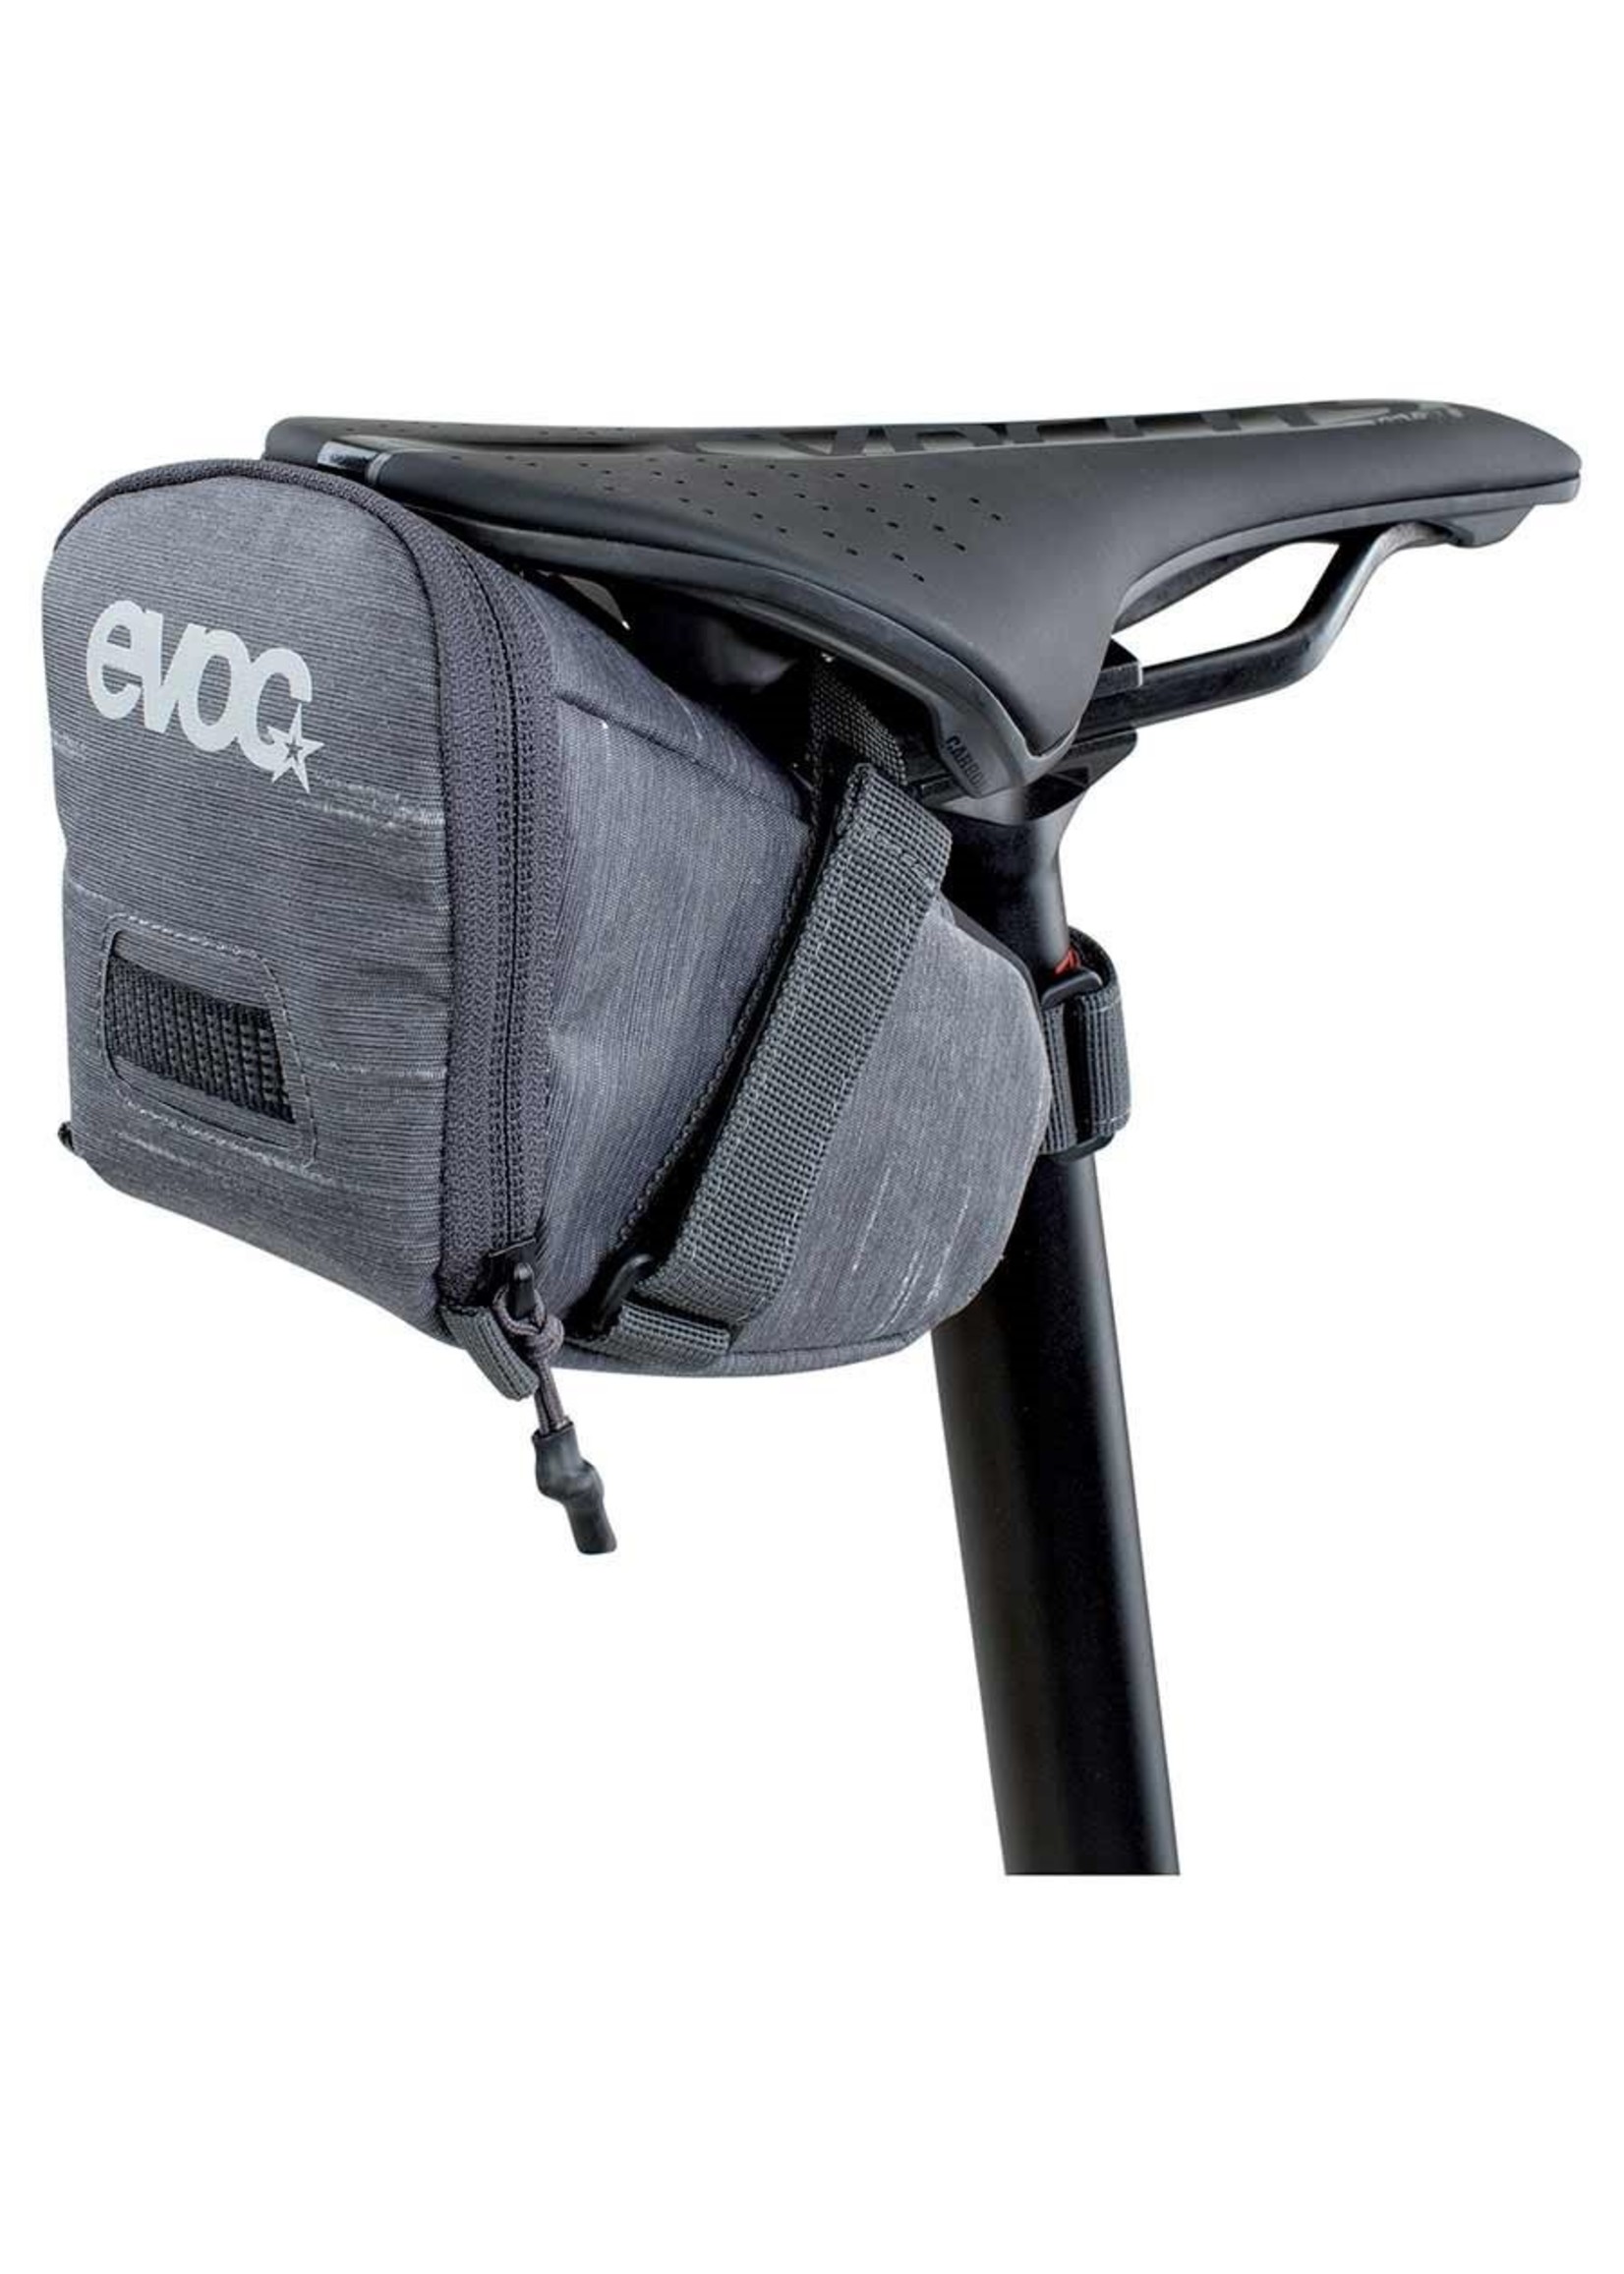 EVOC EVOC, Seat Bag Tour L, Sac de selle, 1L, Gris